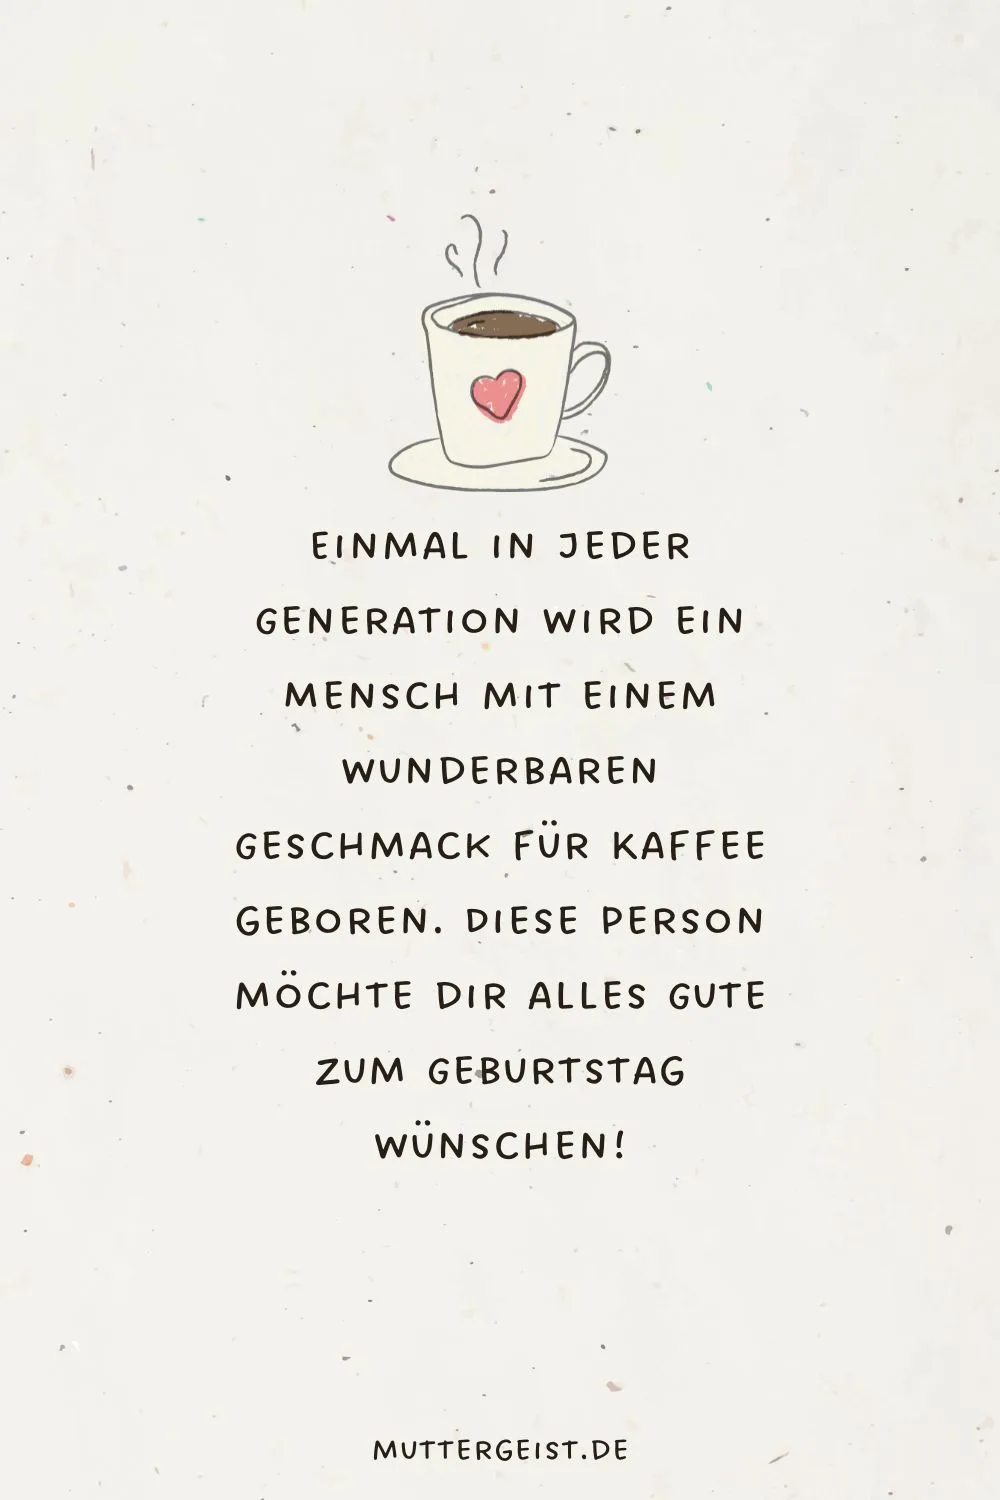 Einmal in jeder Generation wird ein Mensch mit einem wunderbaren Geschmack für Kaffee geboren